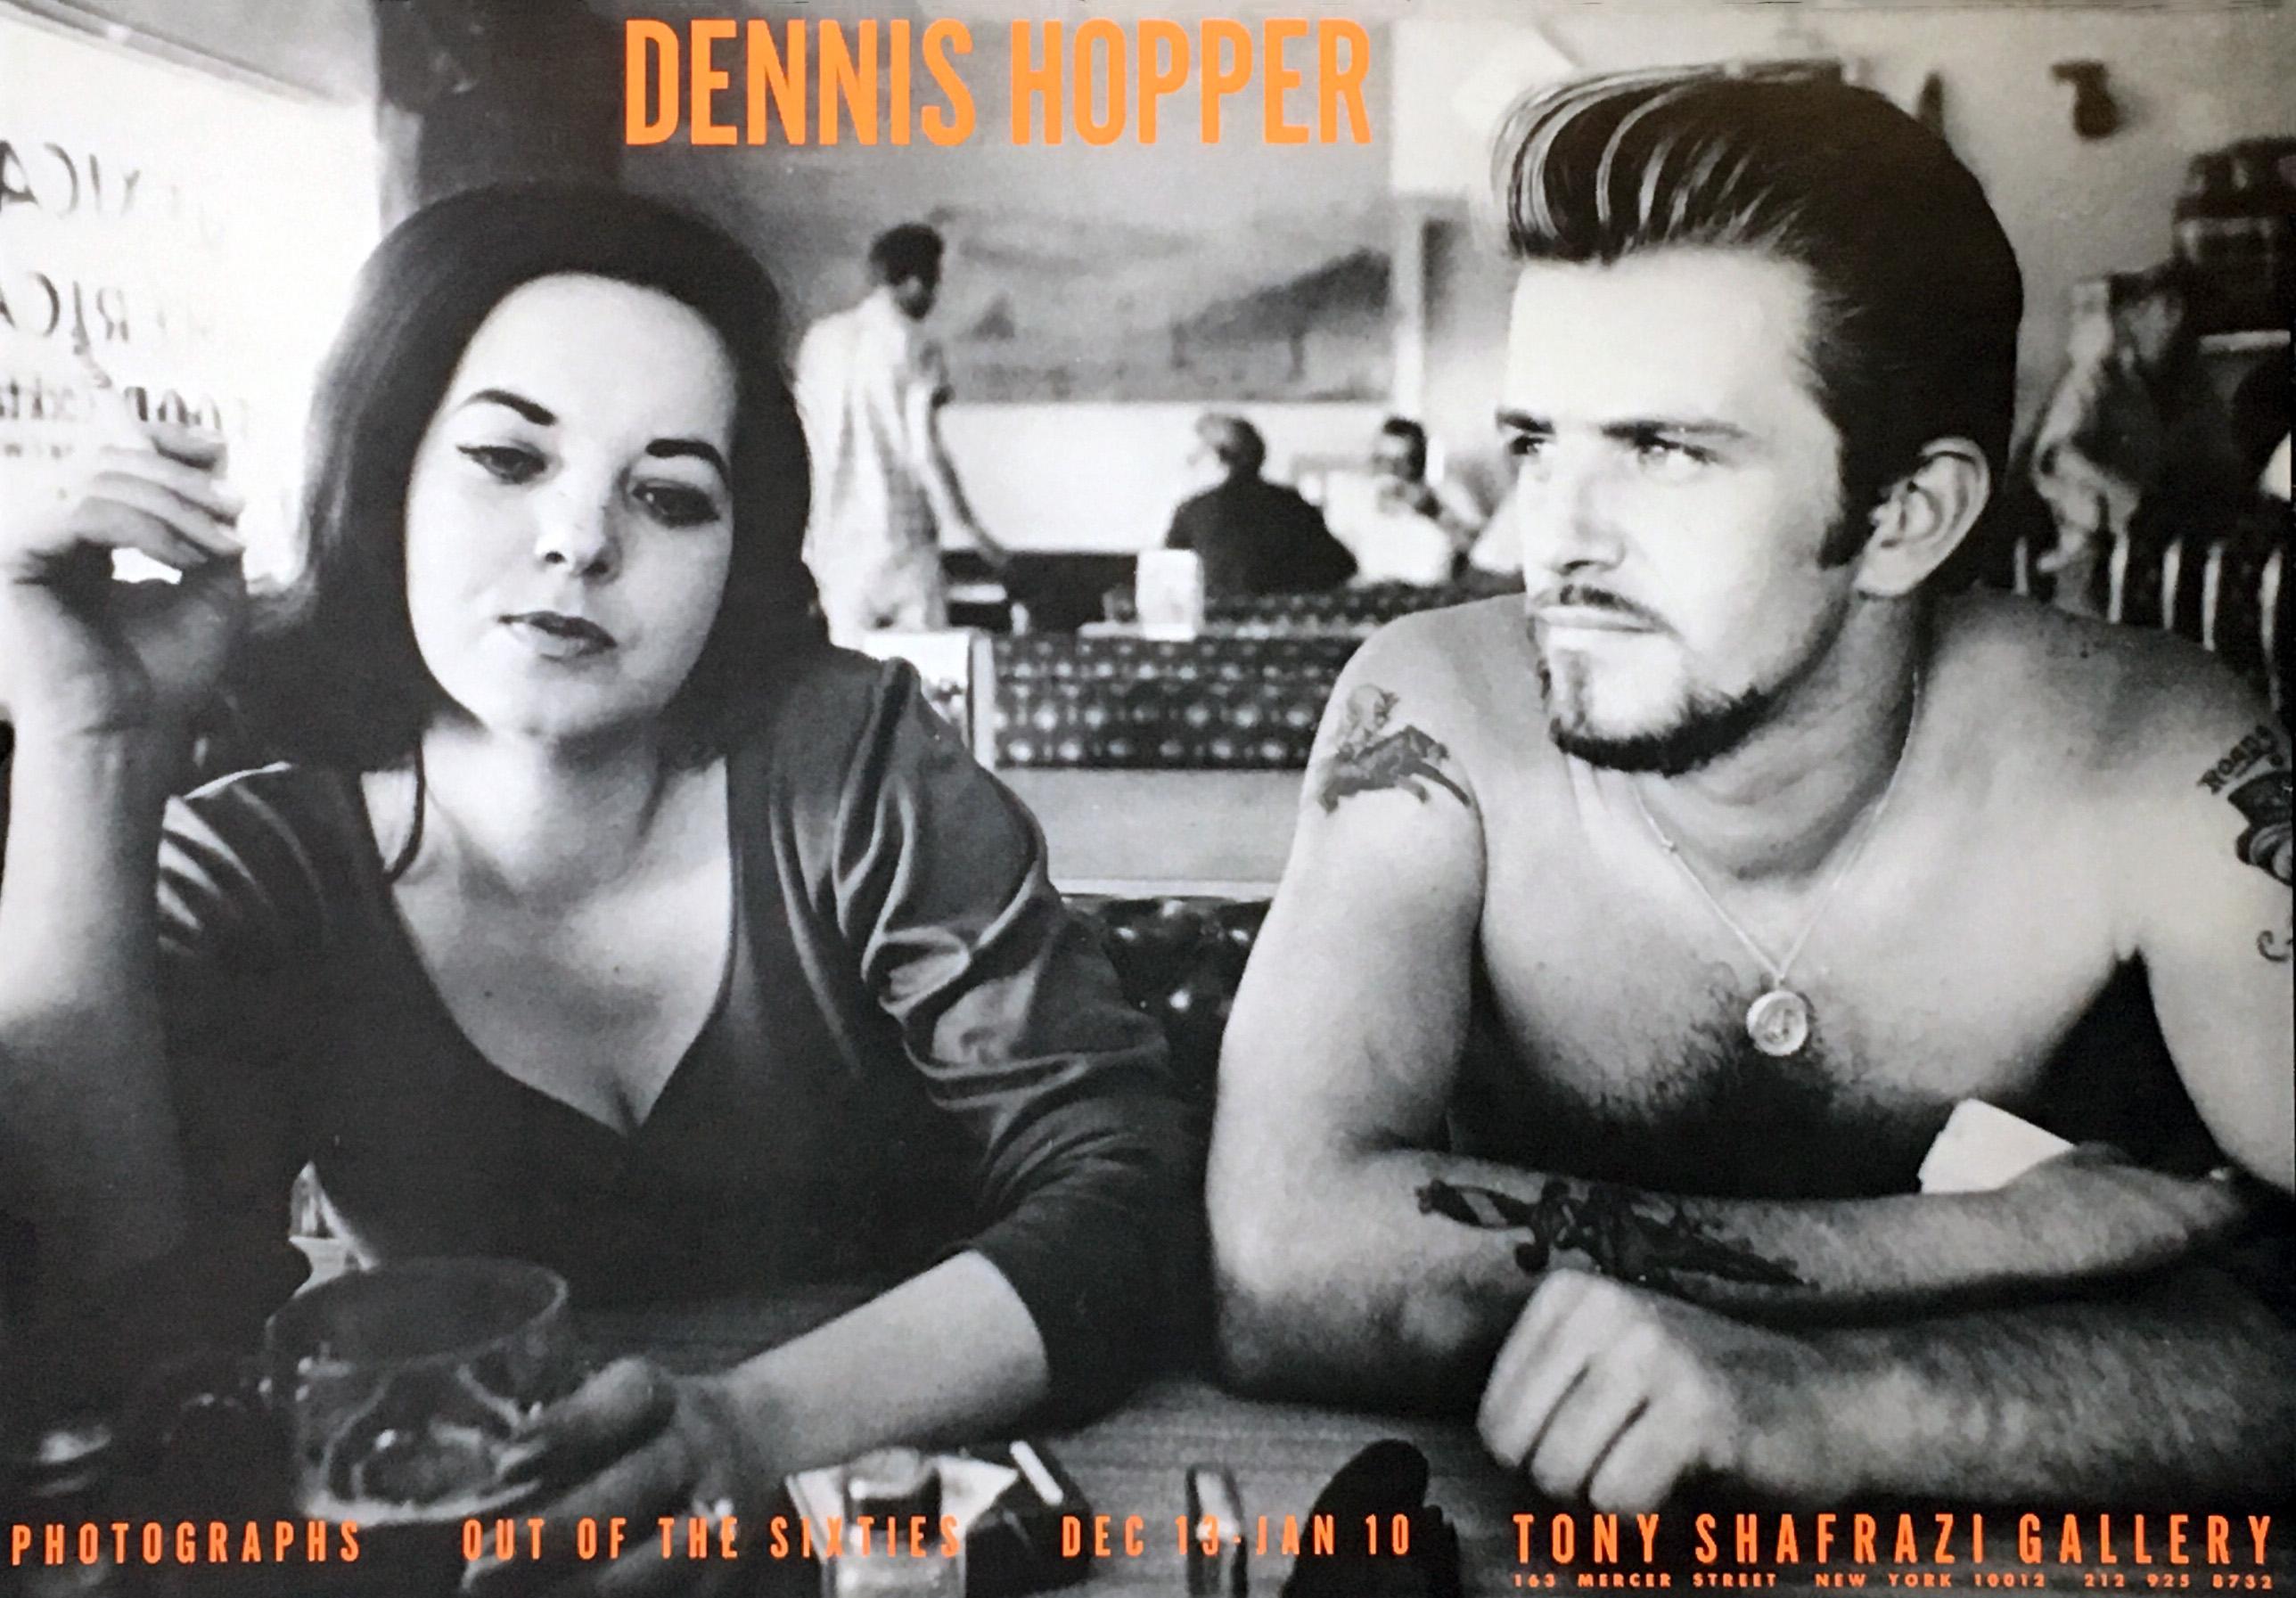 Dennis Hopper Out of the Sixties-Ausstellungsplakat (Dennis Hopper Biker Couple)